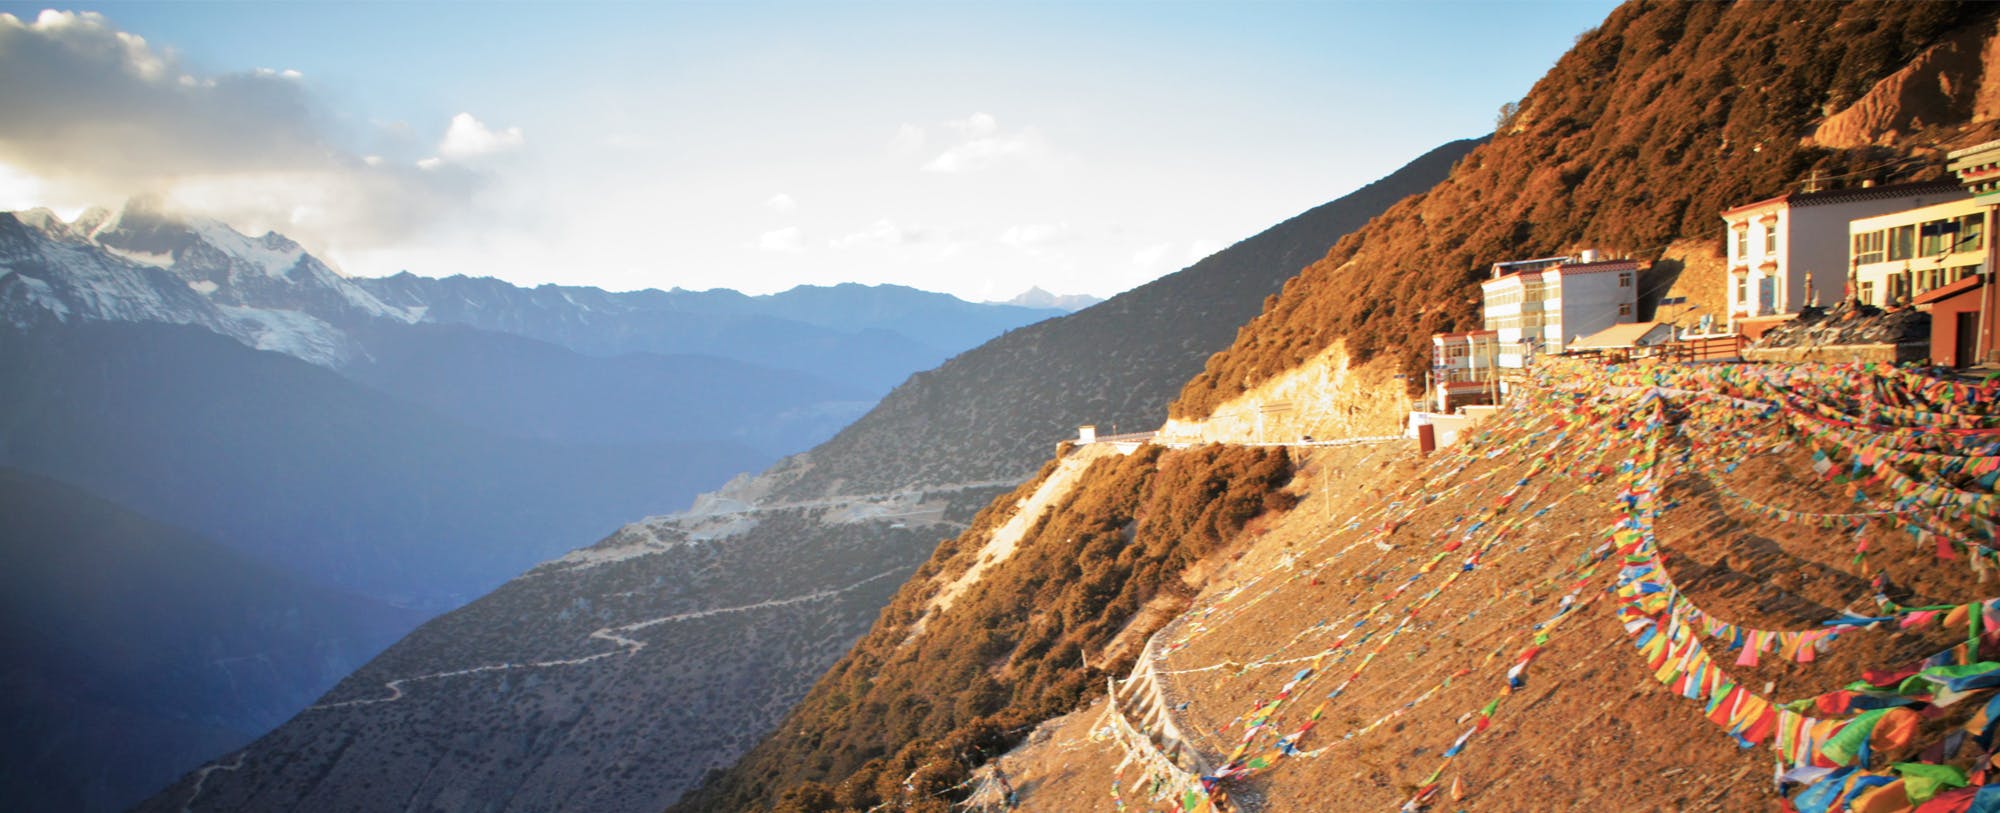 Coordinates Yunnan: Spring Eternal Meets Rocky Mountain High   